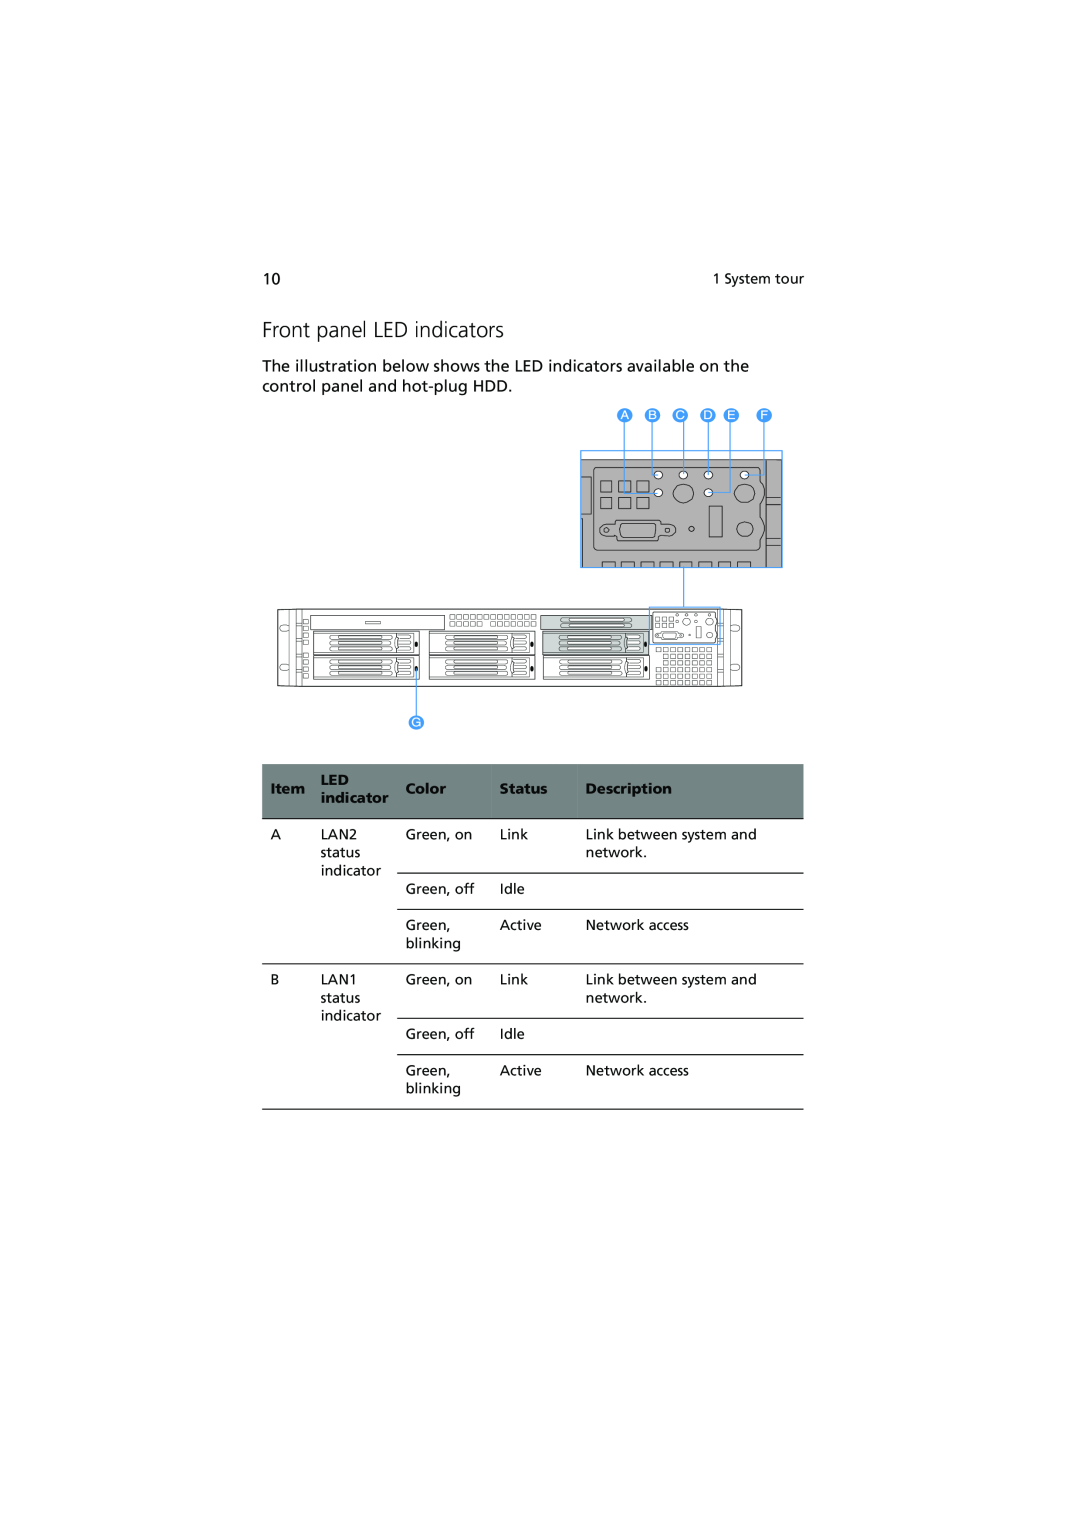 Acer R720 Series manual Front panel LED indicators, Color, Status, Description 